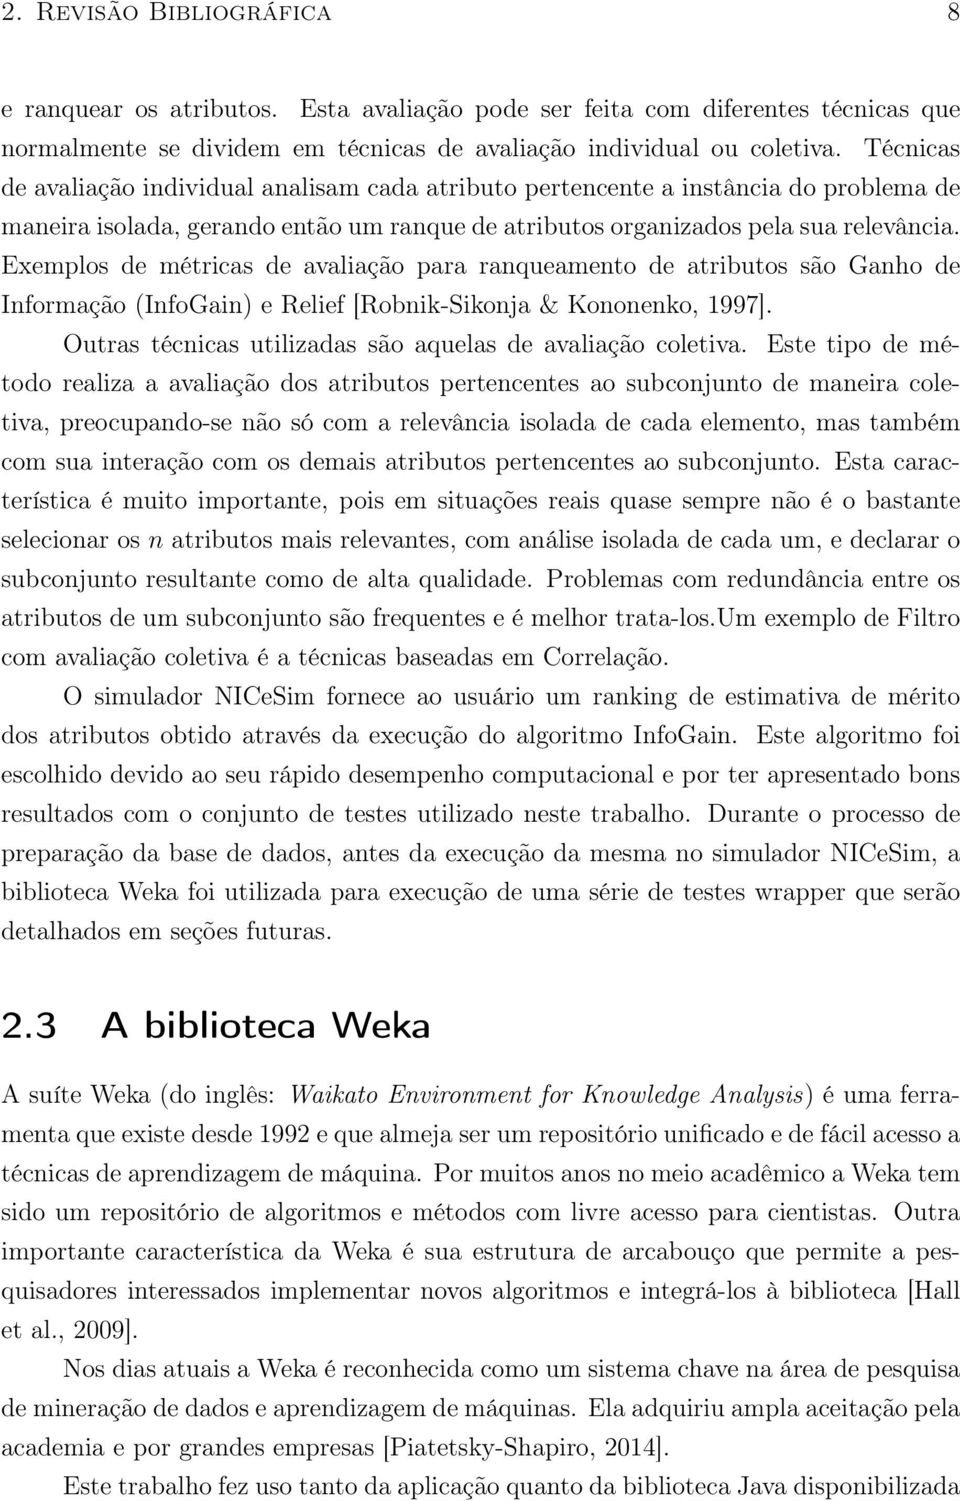 Exemplos de métricas de avaliação para ranqueamento de atributos são Ganho de Informação (InfoGain) e Relief [Robnik-Sikonja & Kononenko, 1997].